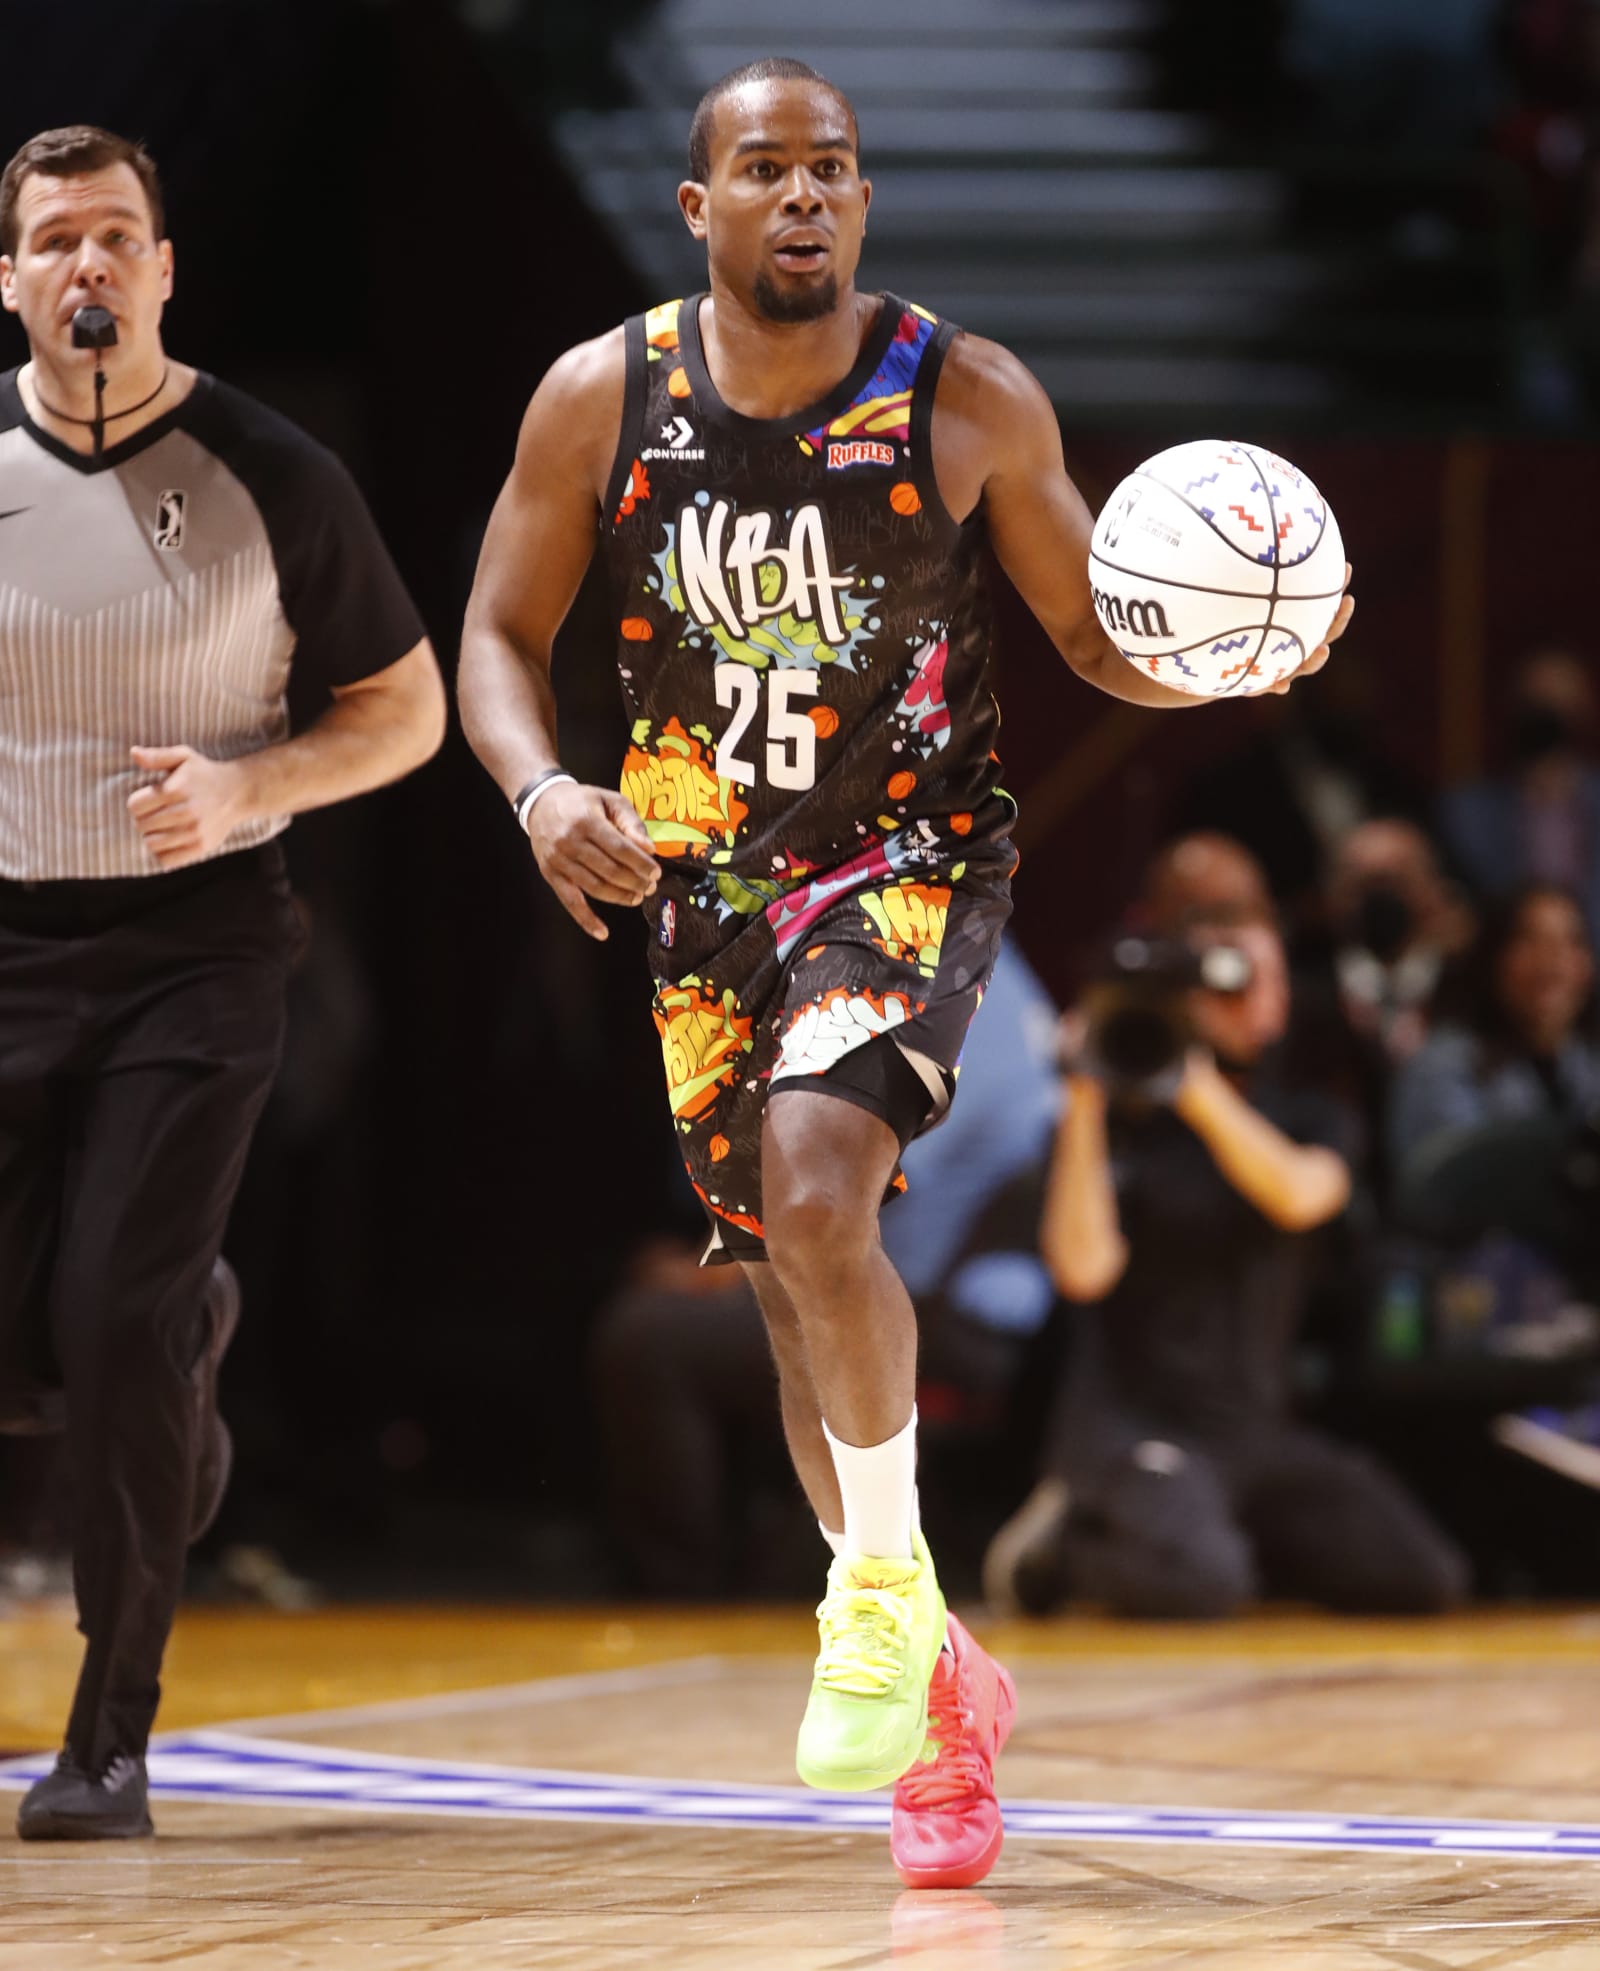 Alex Toussaint Wins MVP for 2022 NBA Celebrity Game, Team Walton